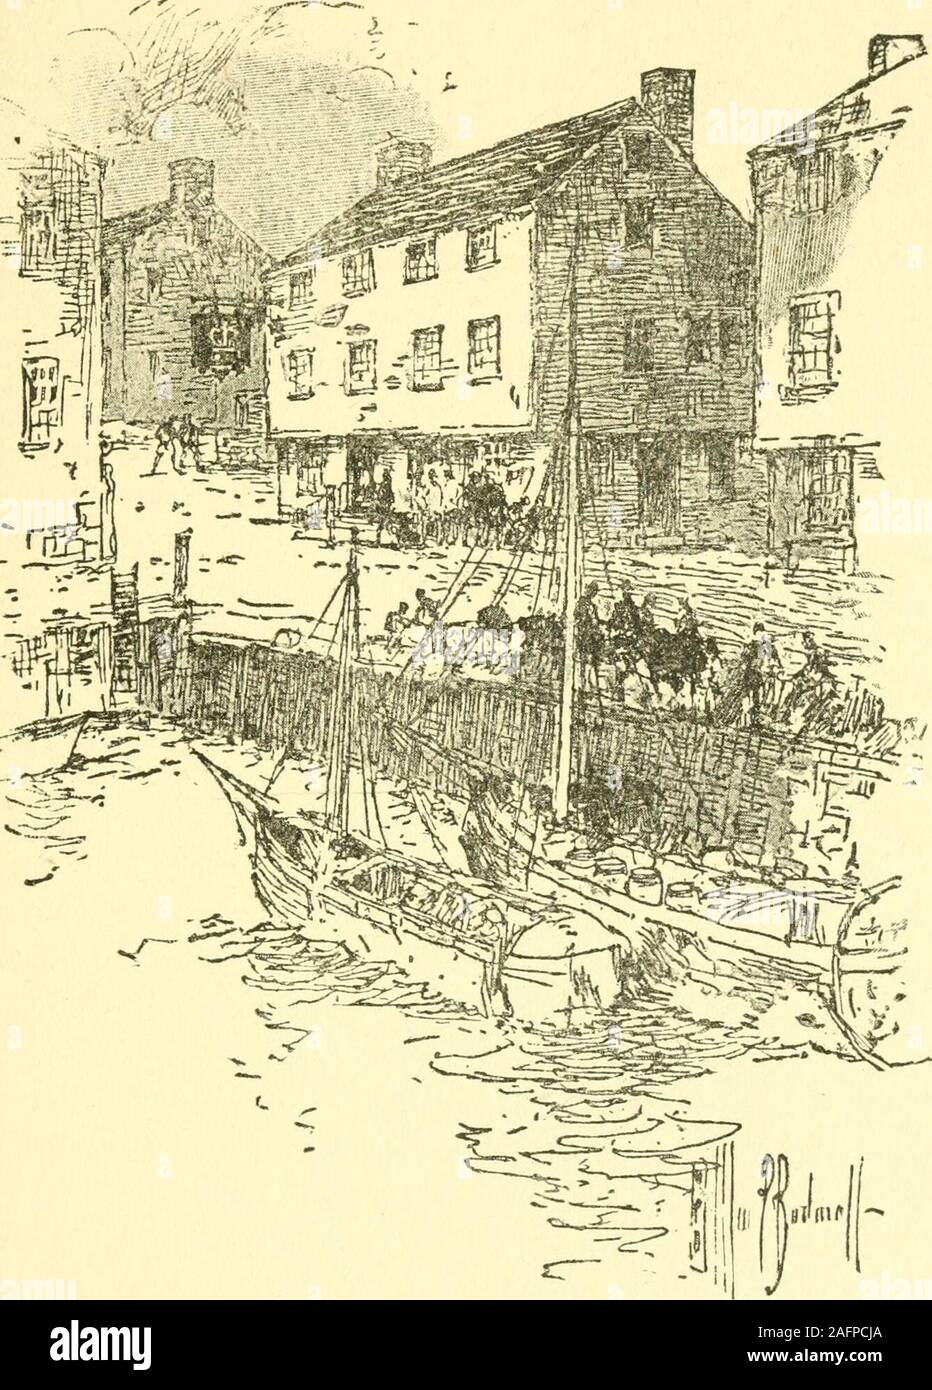 . Alte Boston Tavernen und Taverne clubs.de - Angerissen als an der Spitze von Long Wharf. Schloss Taverne, darnach die George Tavern. Nord-östlich von Flügel Lane (Elm Street), front- oder Südosten byDock Square. Für ein Konto der Hudsons ehelichen Schwierigkeiten, siehe Winthrops New England, II. 249. Ein weiteres Haus gleichen Namen ofthe ist in 1675 und 1693 erwähnt. Eine stillearlier Name war die Blies Bell, 1673. Es war inMackerel Lane (Kilby Straße), Ecke von Liberty Square. Coles Inn. Siehe genannt - in Proc zu tun. Standort. Ant., Soc, VII, S. 51. Für die Episode des Herrn Leigh consultOld Wahrzeichen von Boston, S. 109. Cromwel Stockfoto